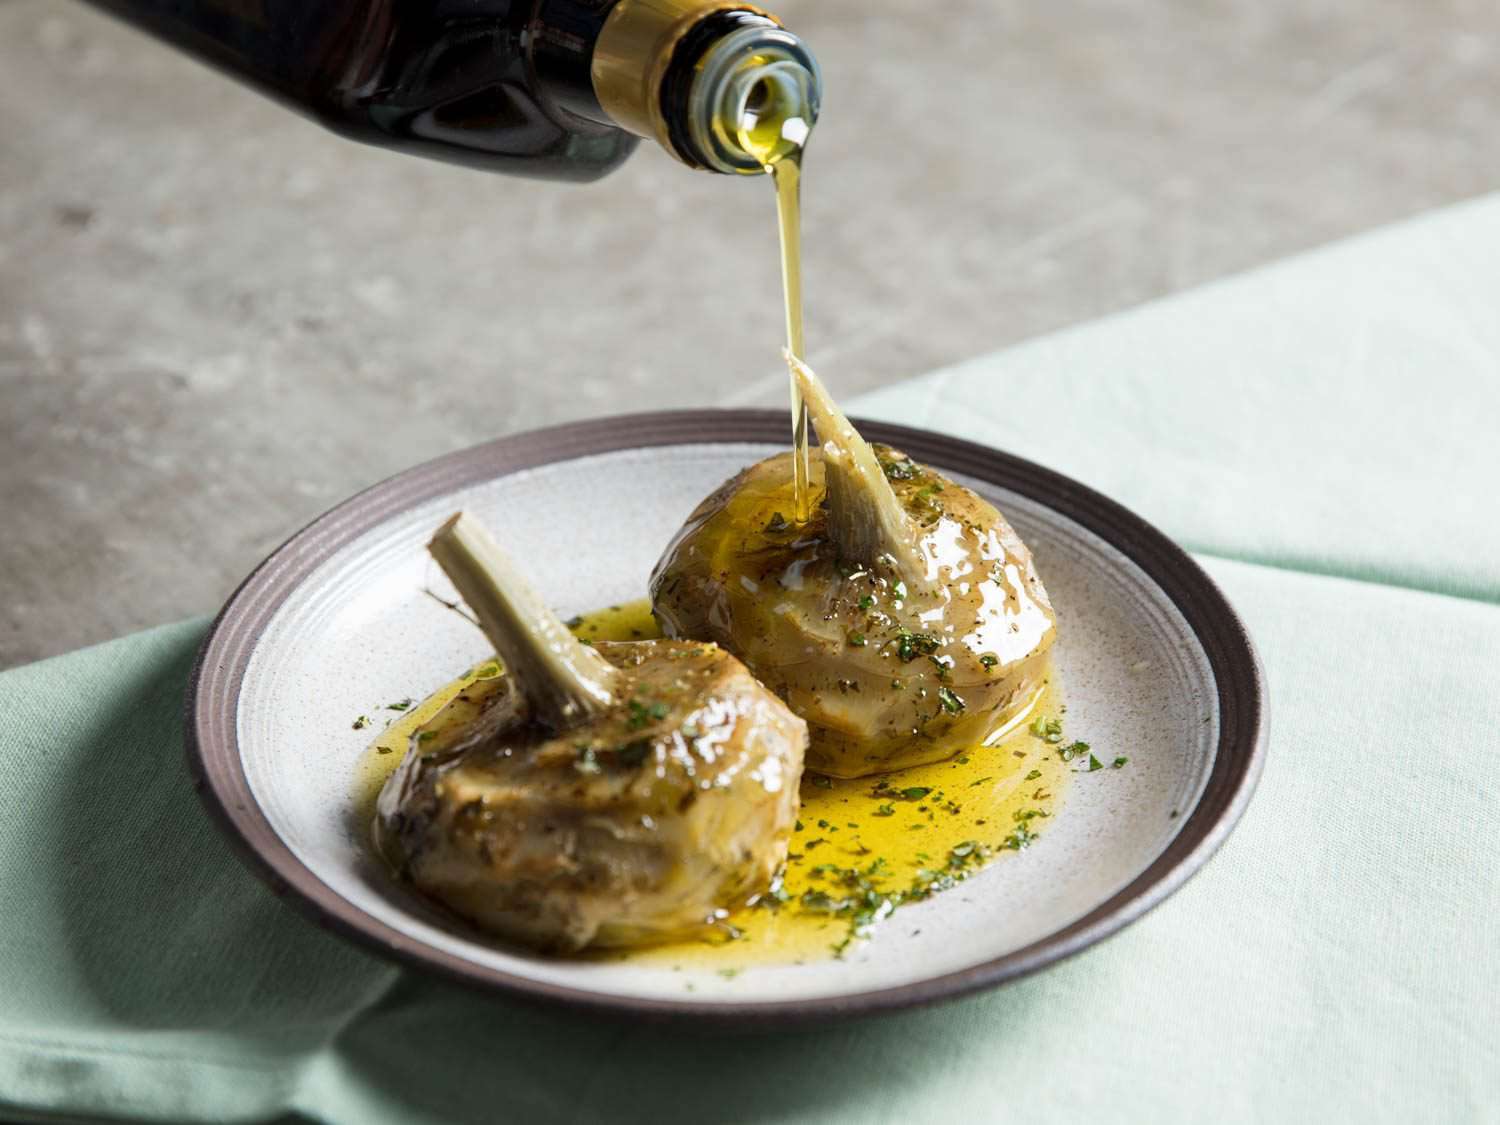 Artichoke in olive oil